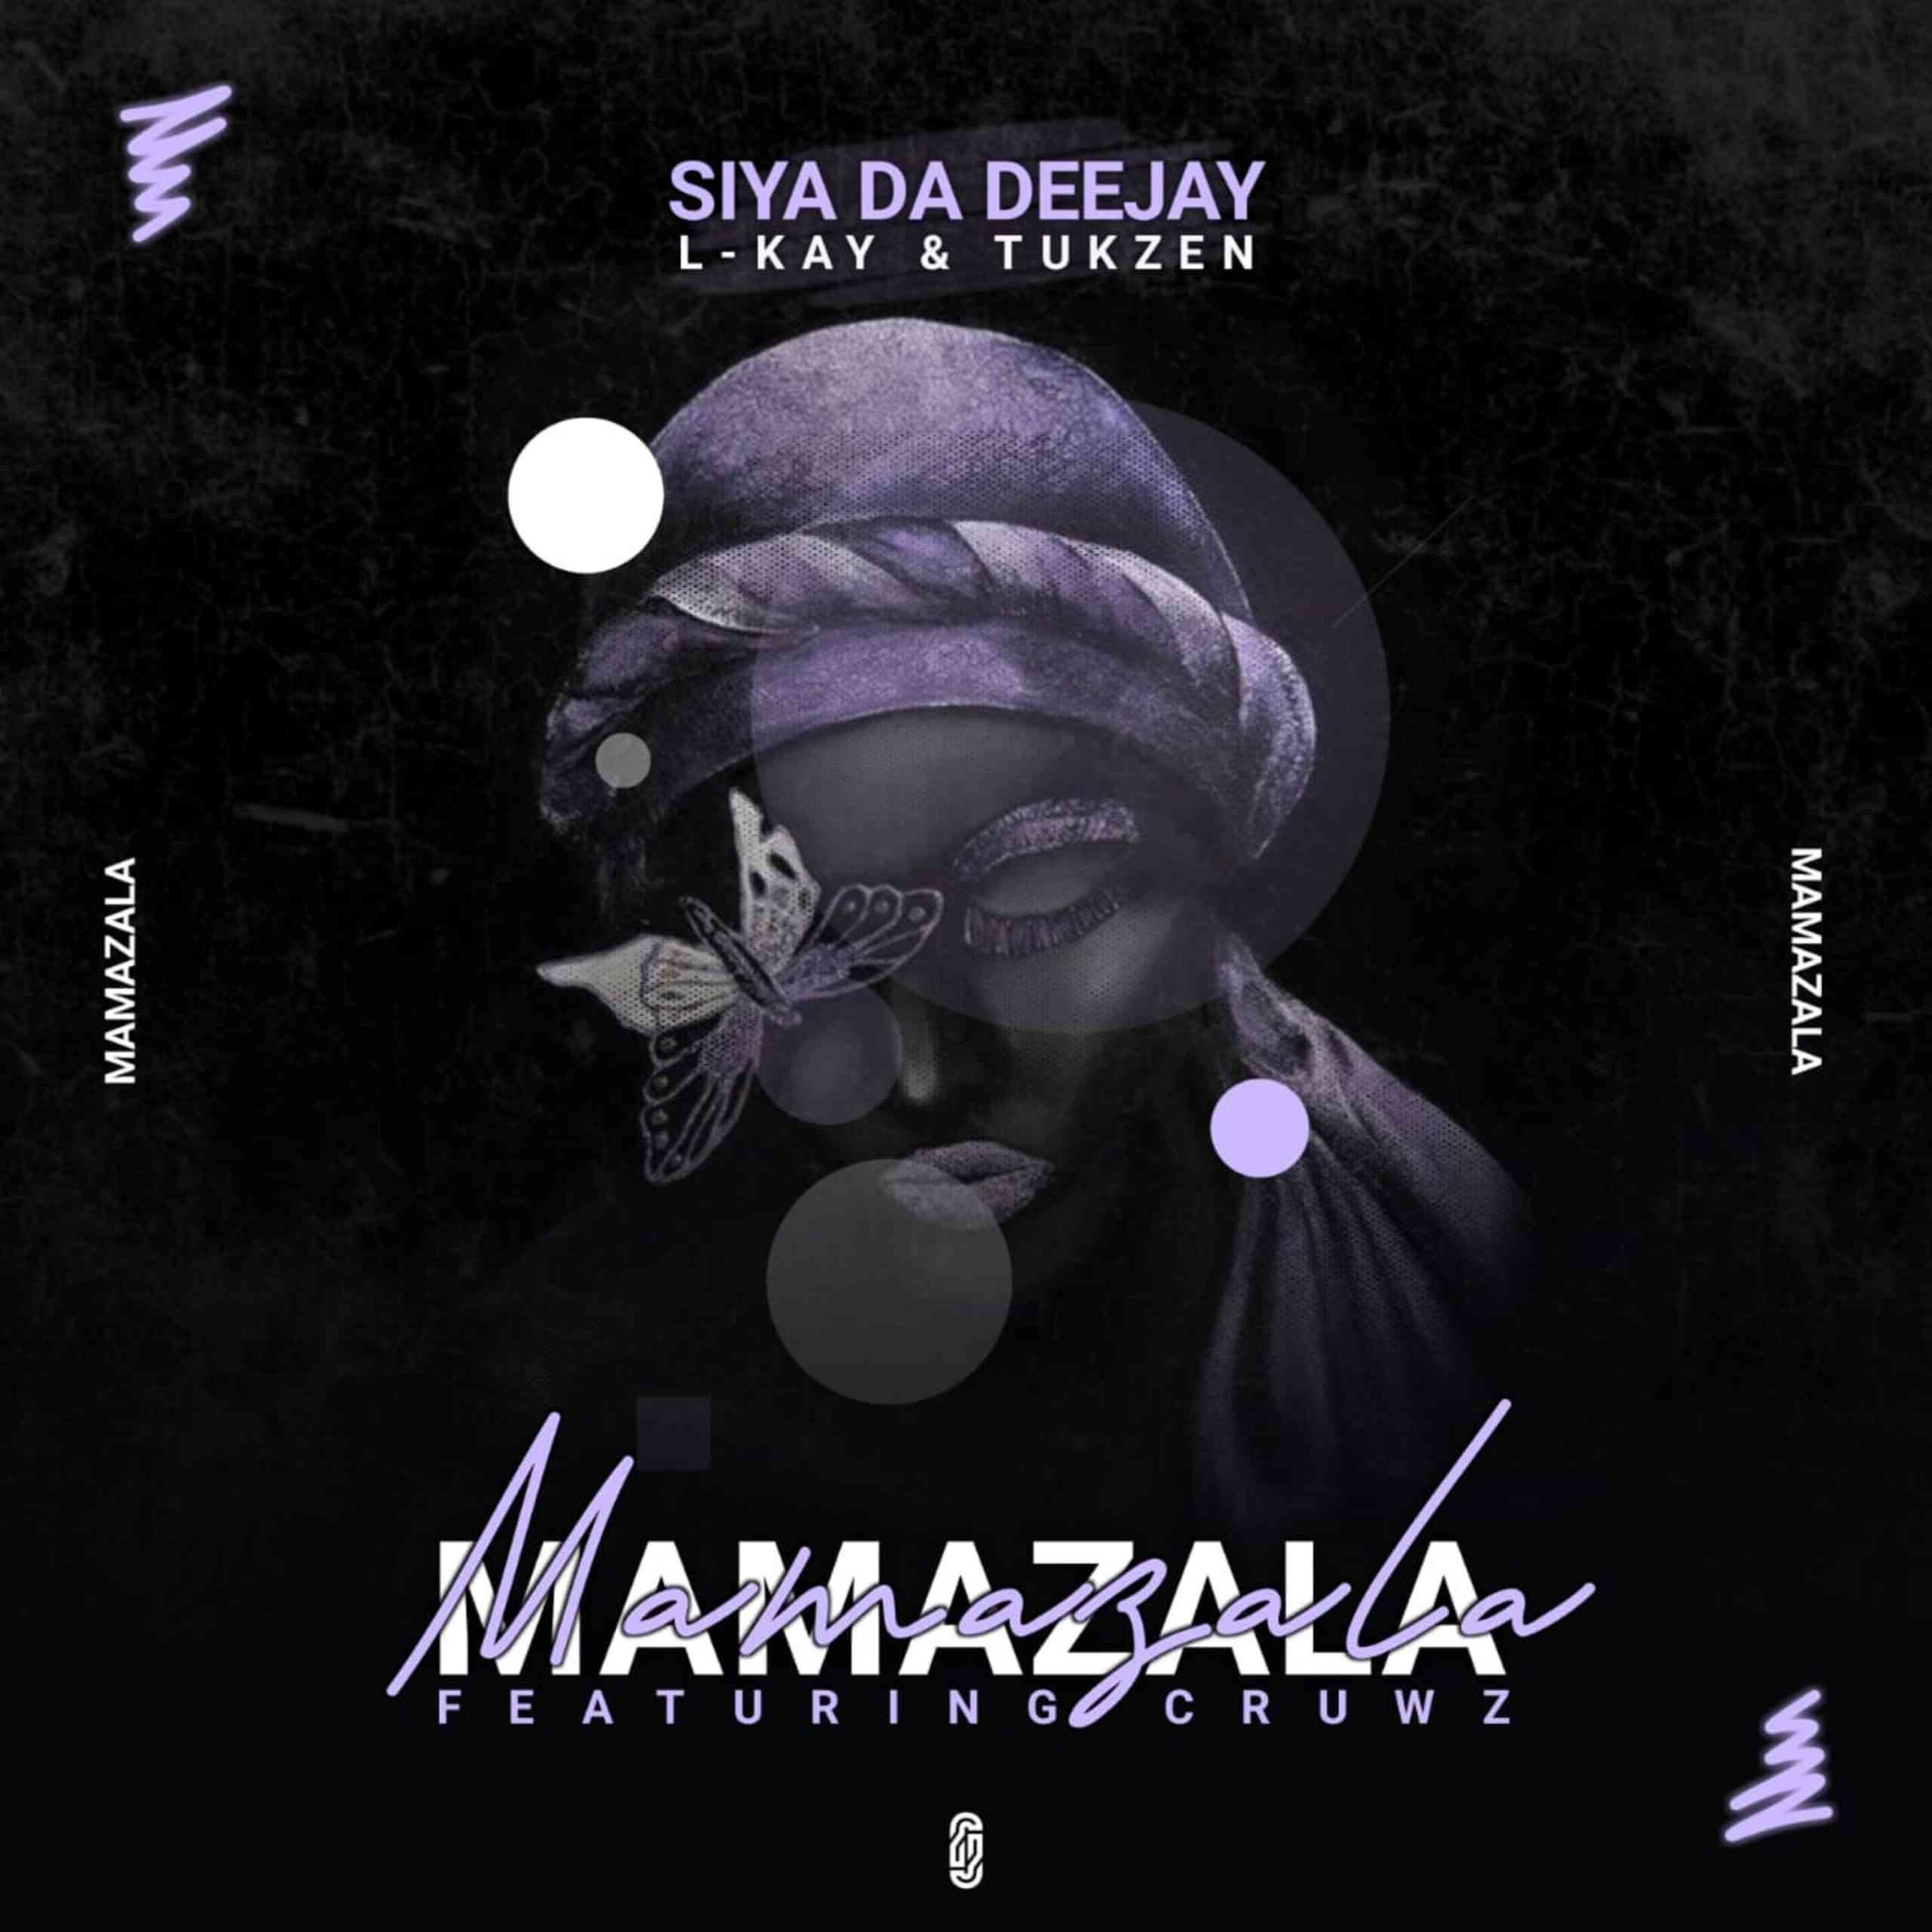 Siya Da Deejay, L-kay & Tukzen ft. Cruws - Mamazala 